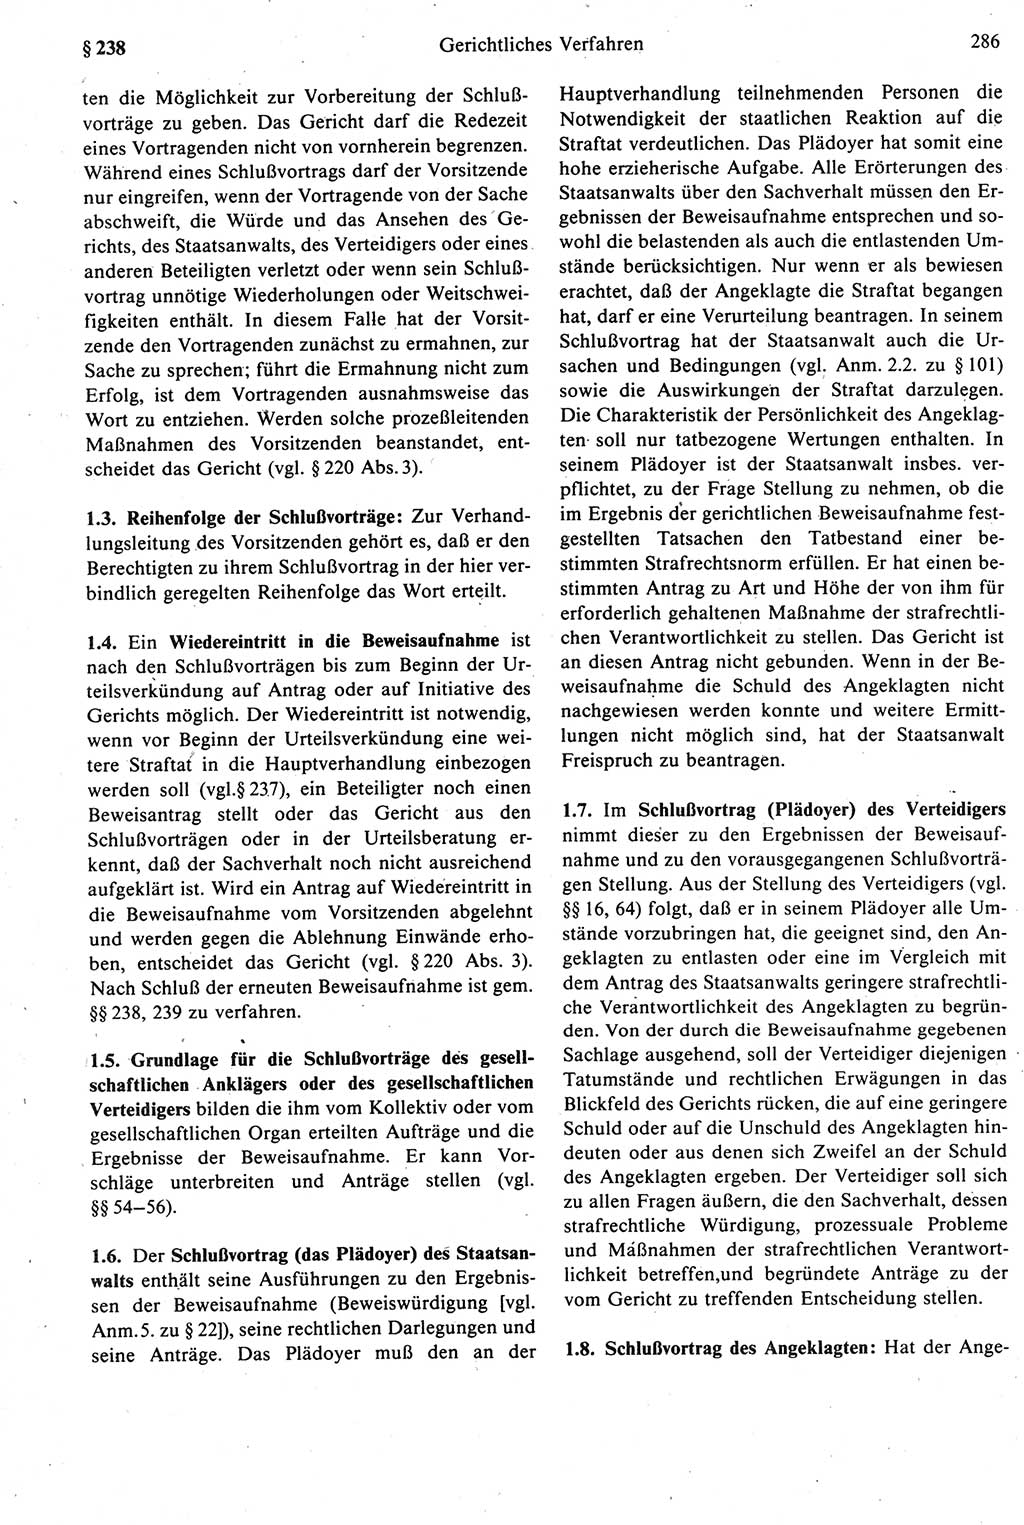 Strafprozeßrecht der DDR [Deutsche Demokratische Republik], Kommentar zur Strafprozeßordnung (StPO) 1987, Seite 286 (Strafprozeßr. DDR Komm. StPO 1987, S. 286)